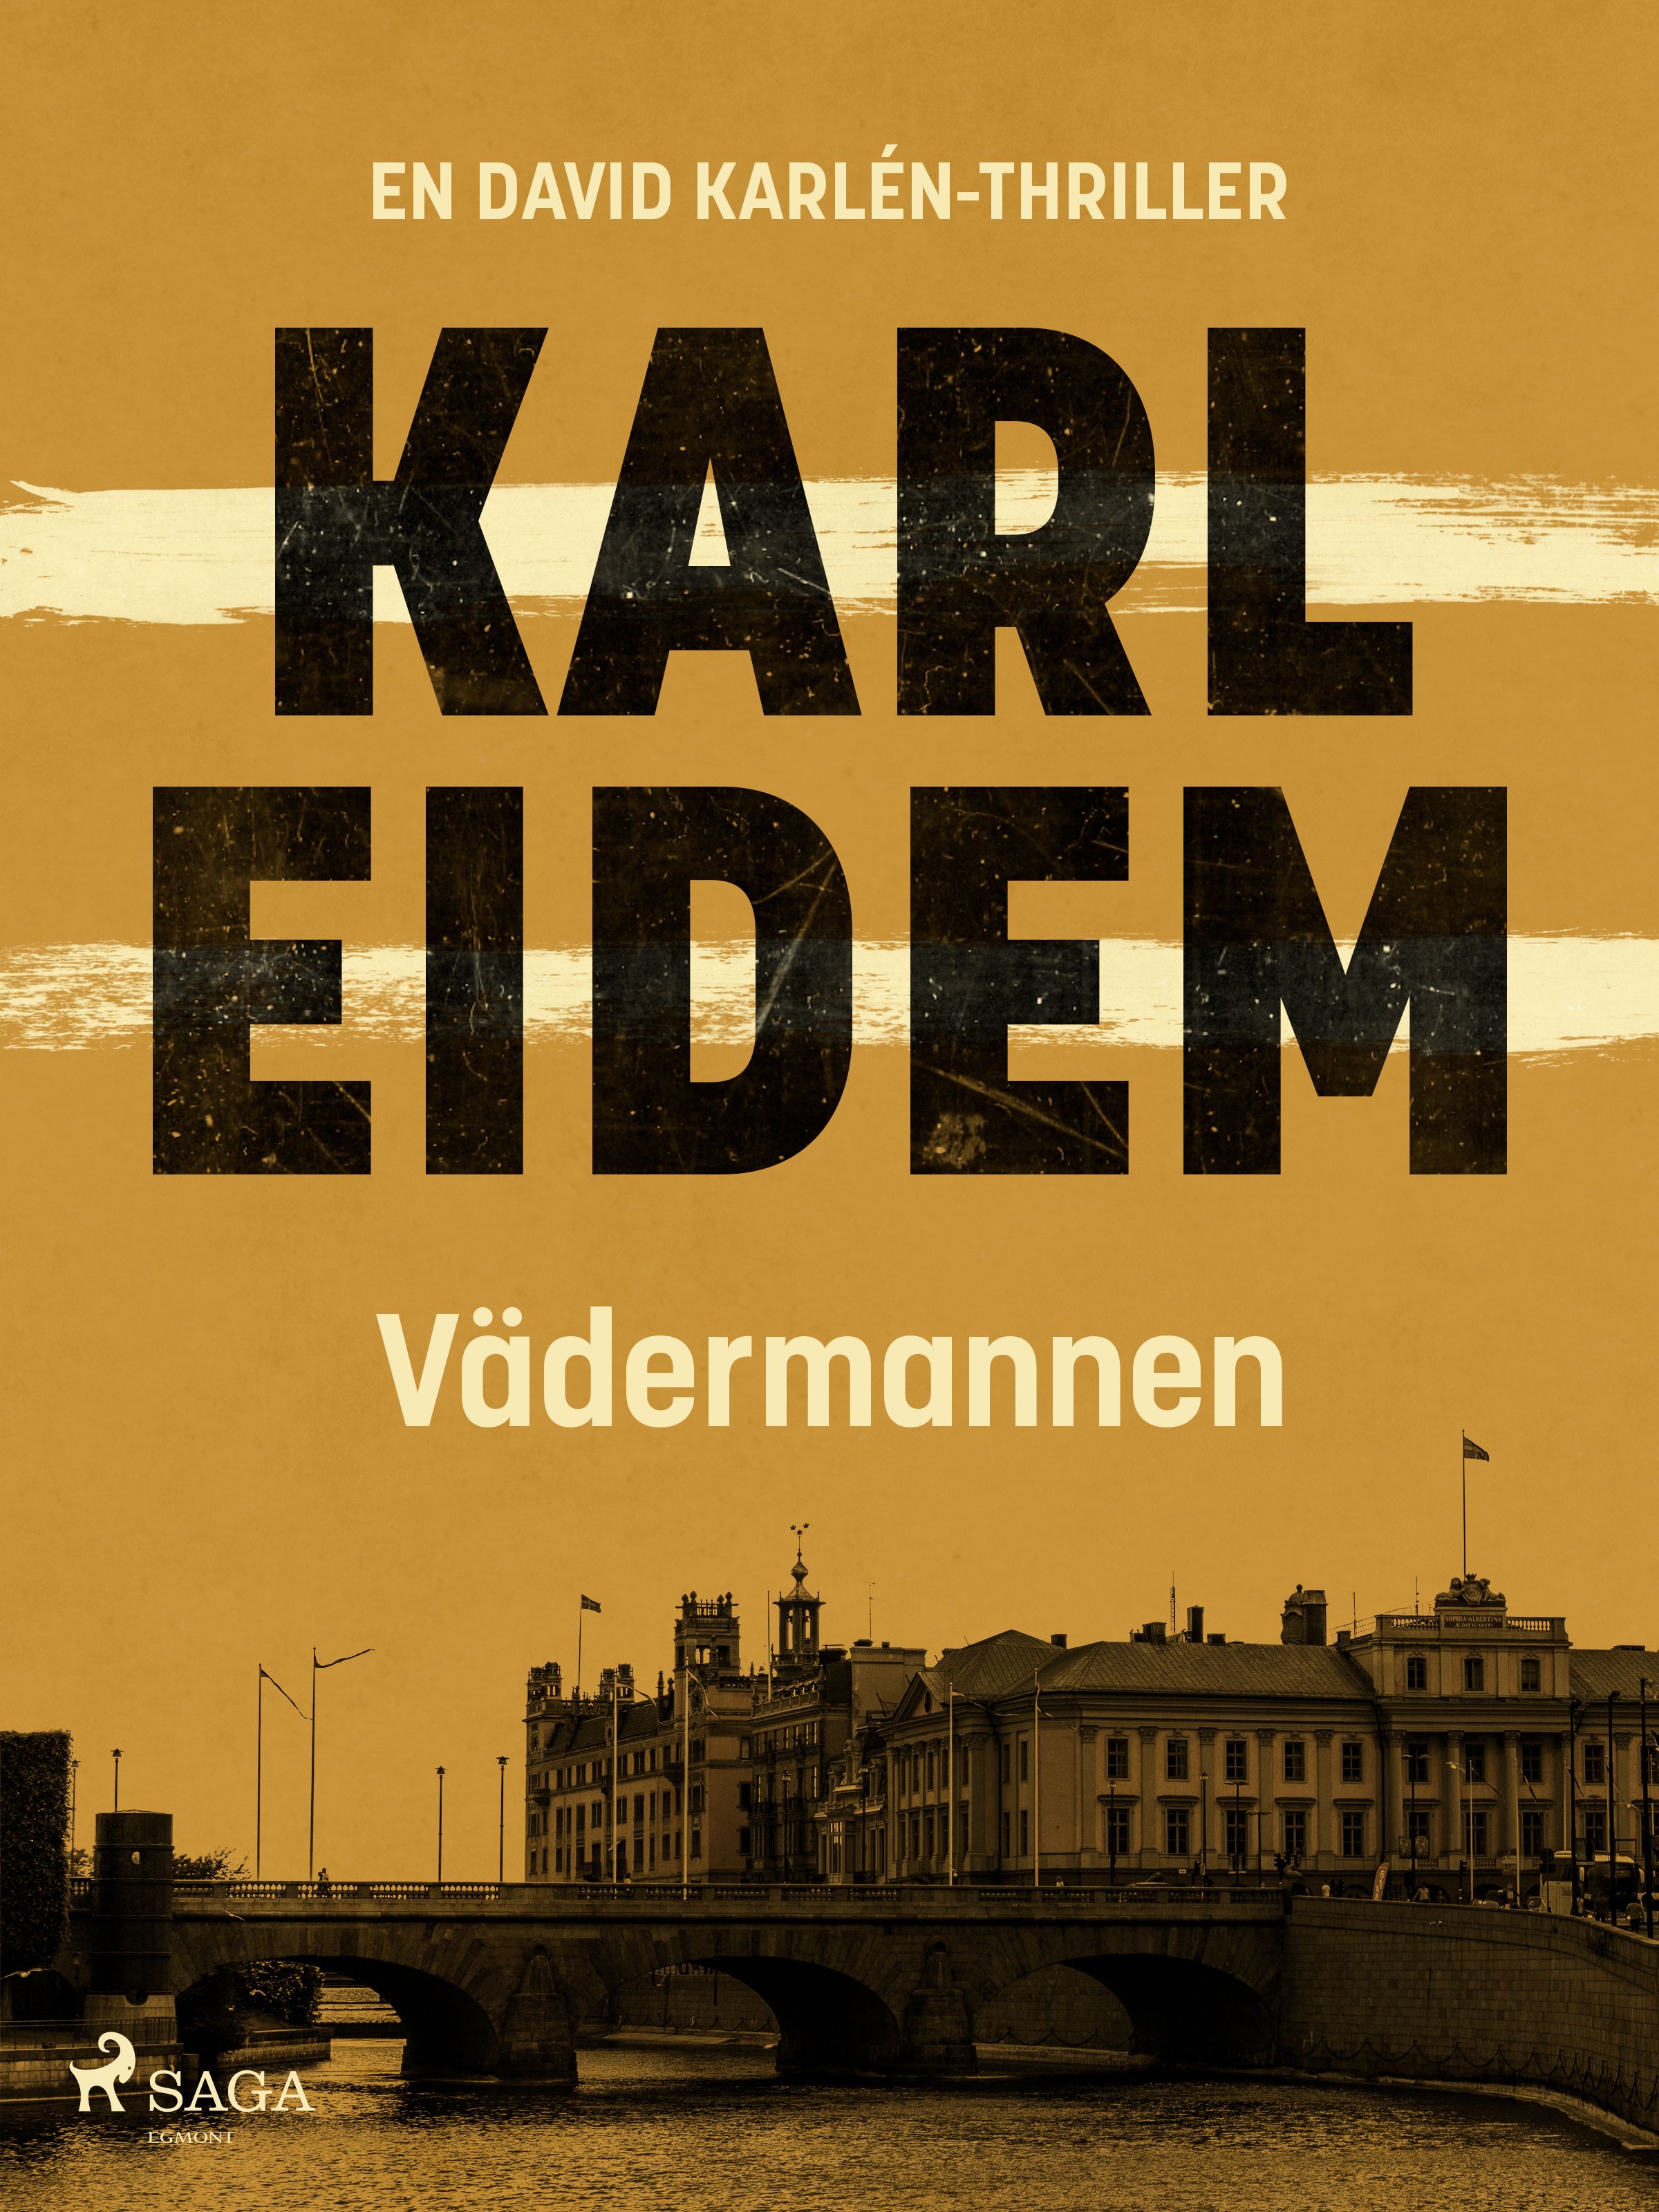 Vädermannen, e-bok av Karl Eidem